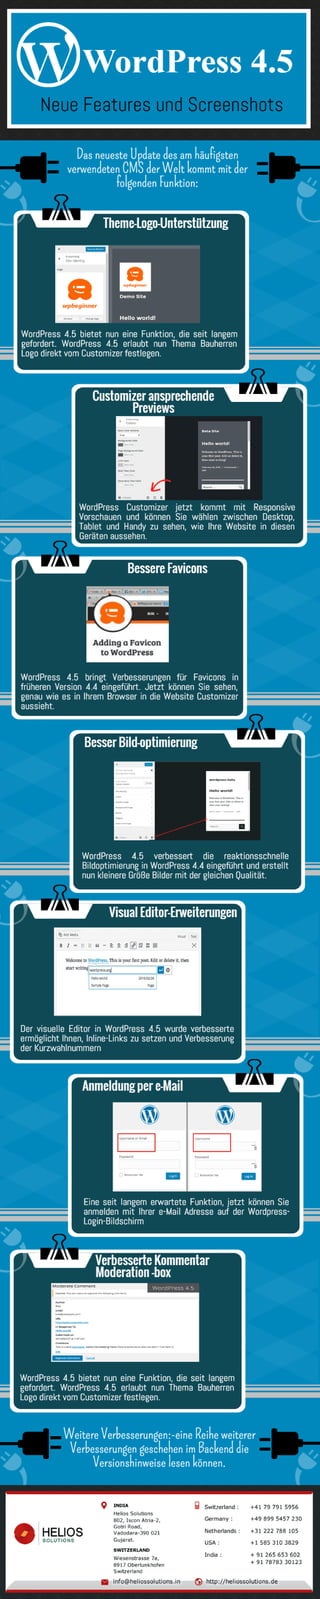 WordPress 4.5 -neue Features und Screenshots [infographic]